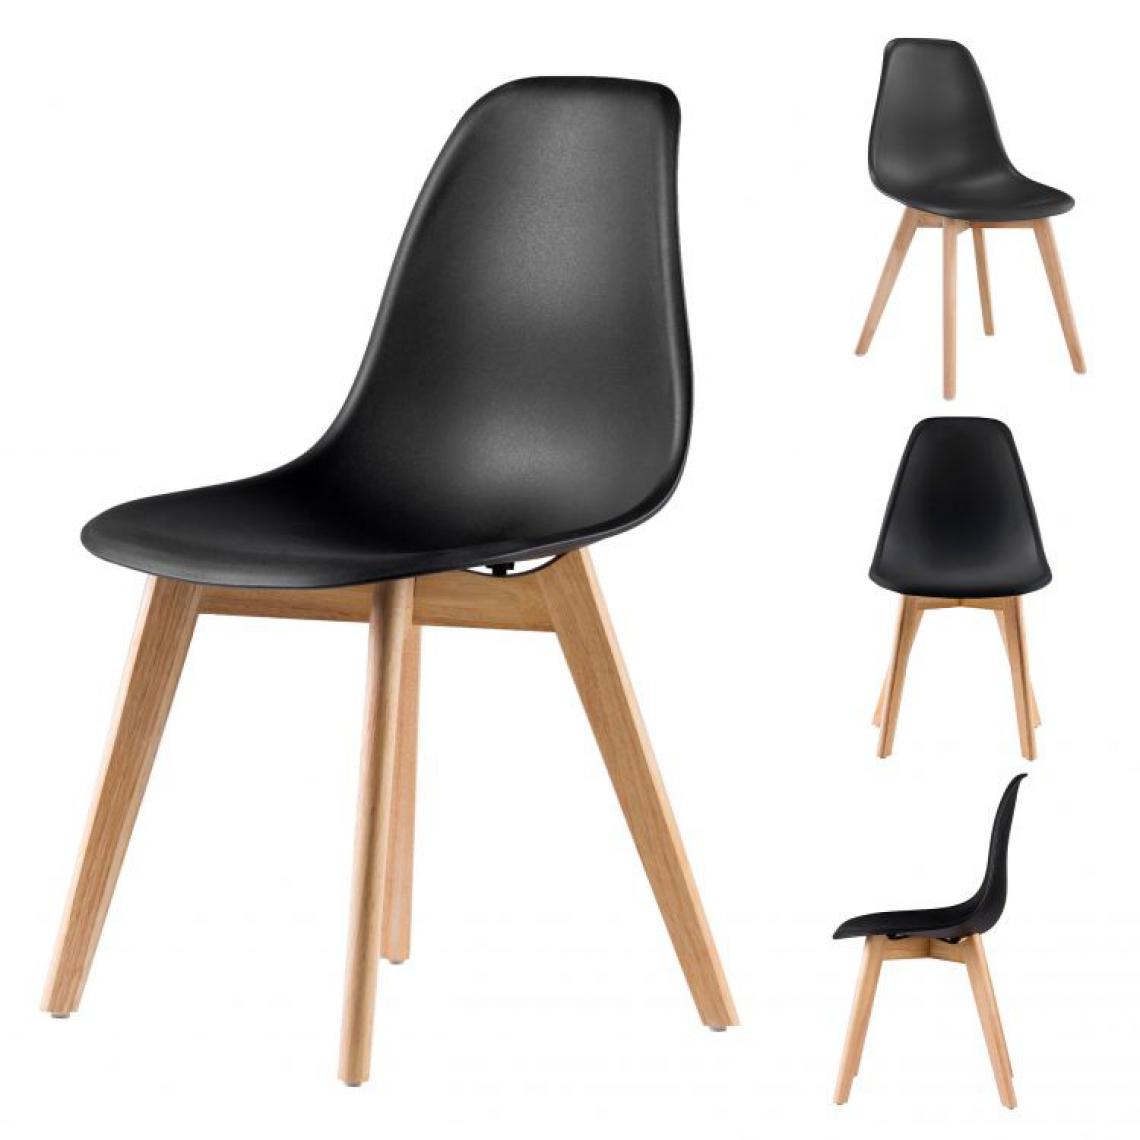 Hucoco - MSTORE - Lot de 4 chaises style moderne salon/chambre - 65x52x52 - Pieds en bois - Noir - Chaises